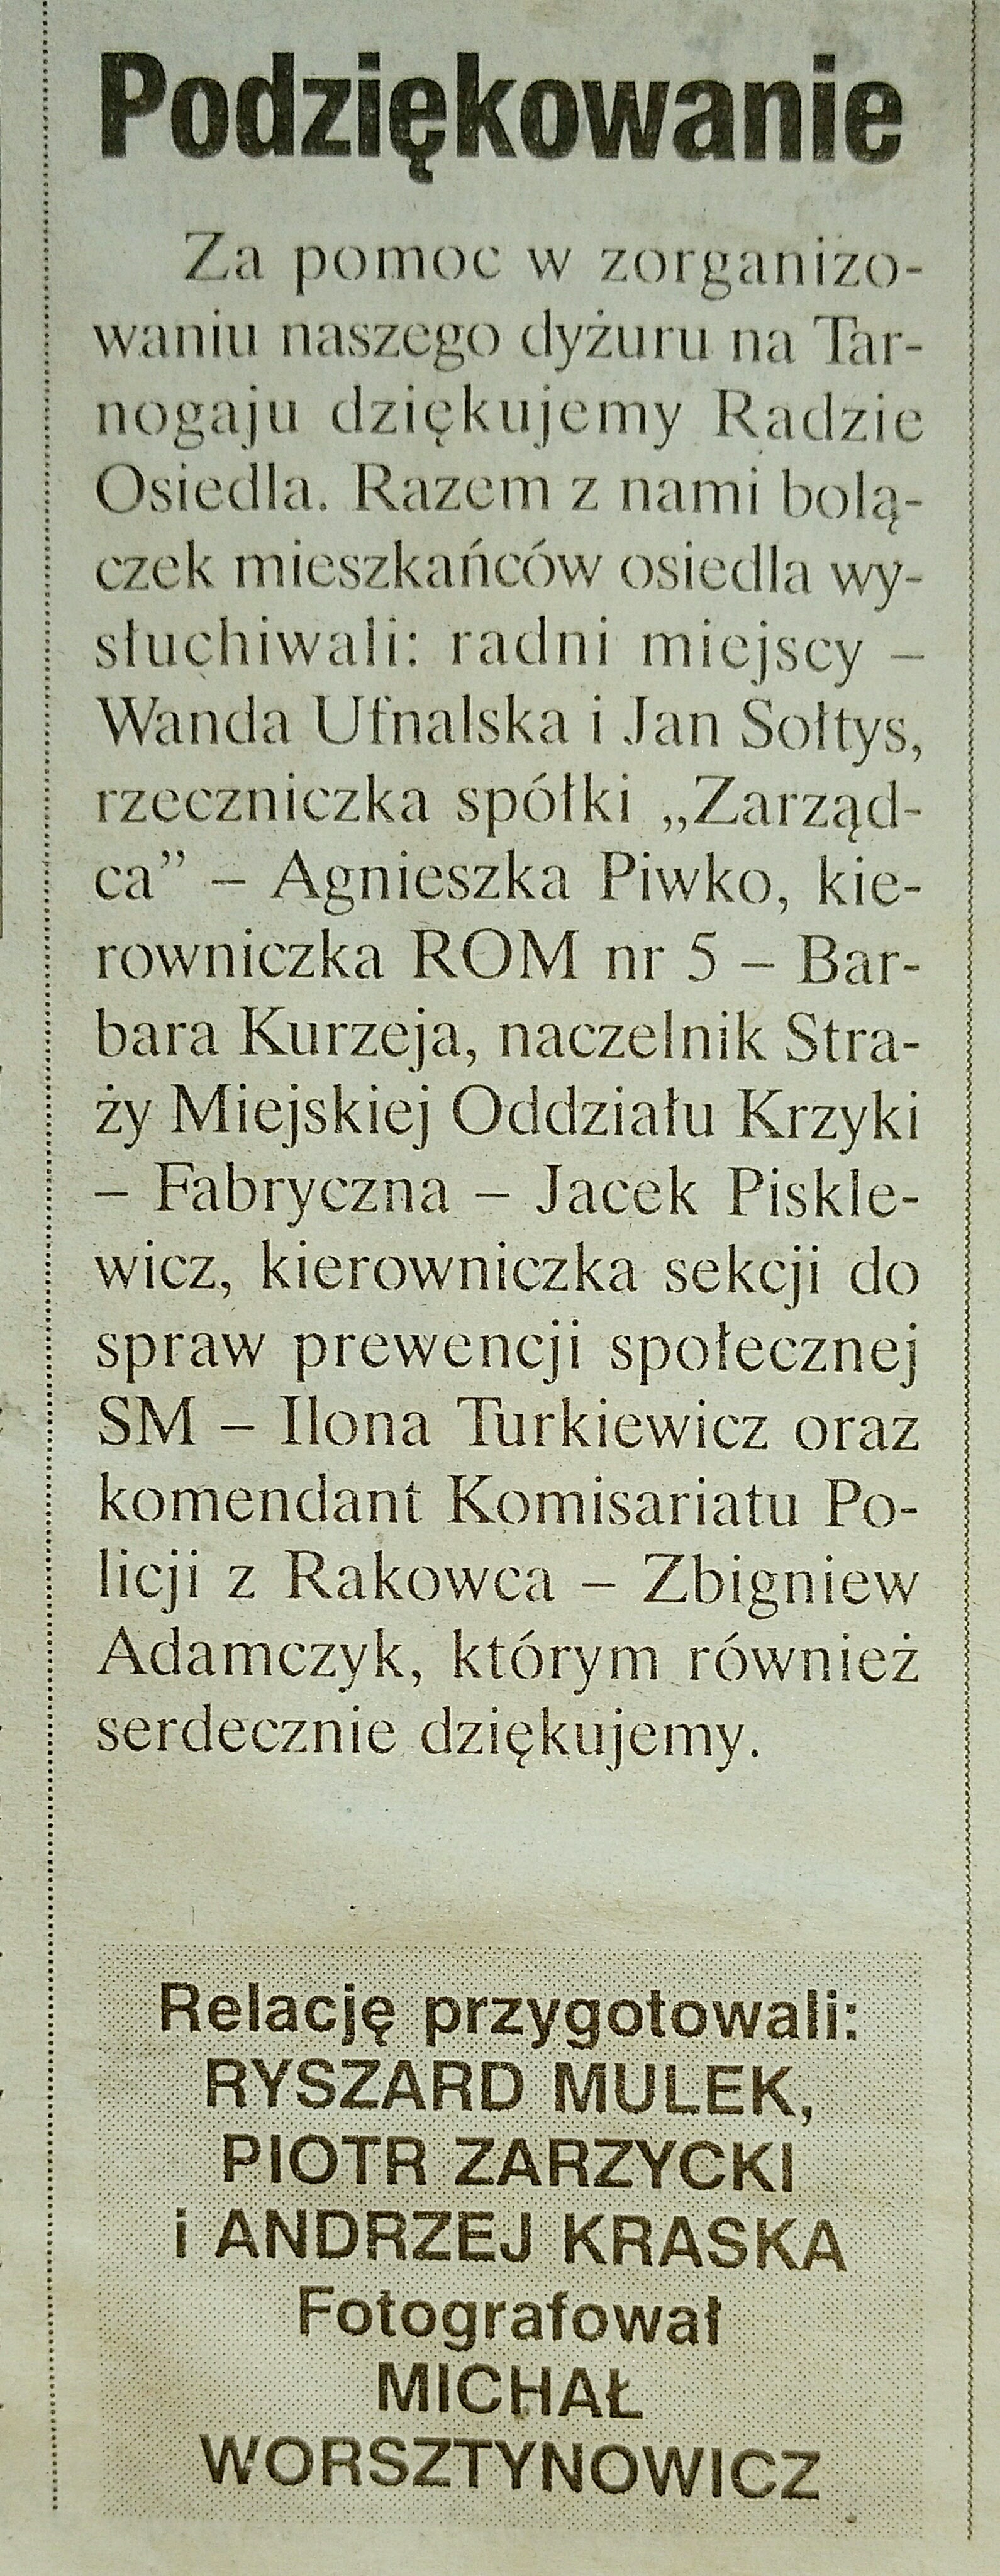 14 18 Czerwca 2001 Wieczór Wrocławski